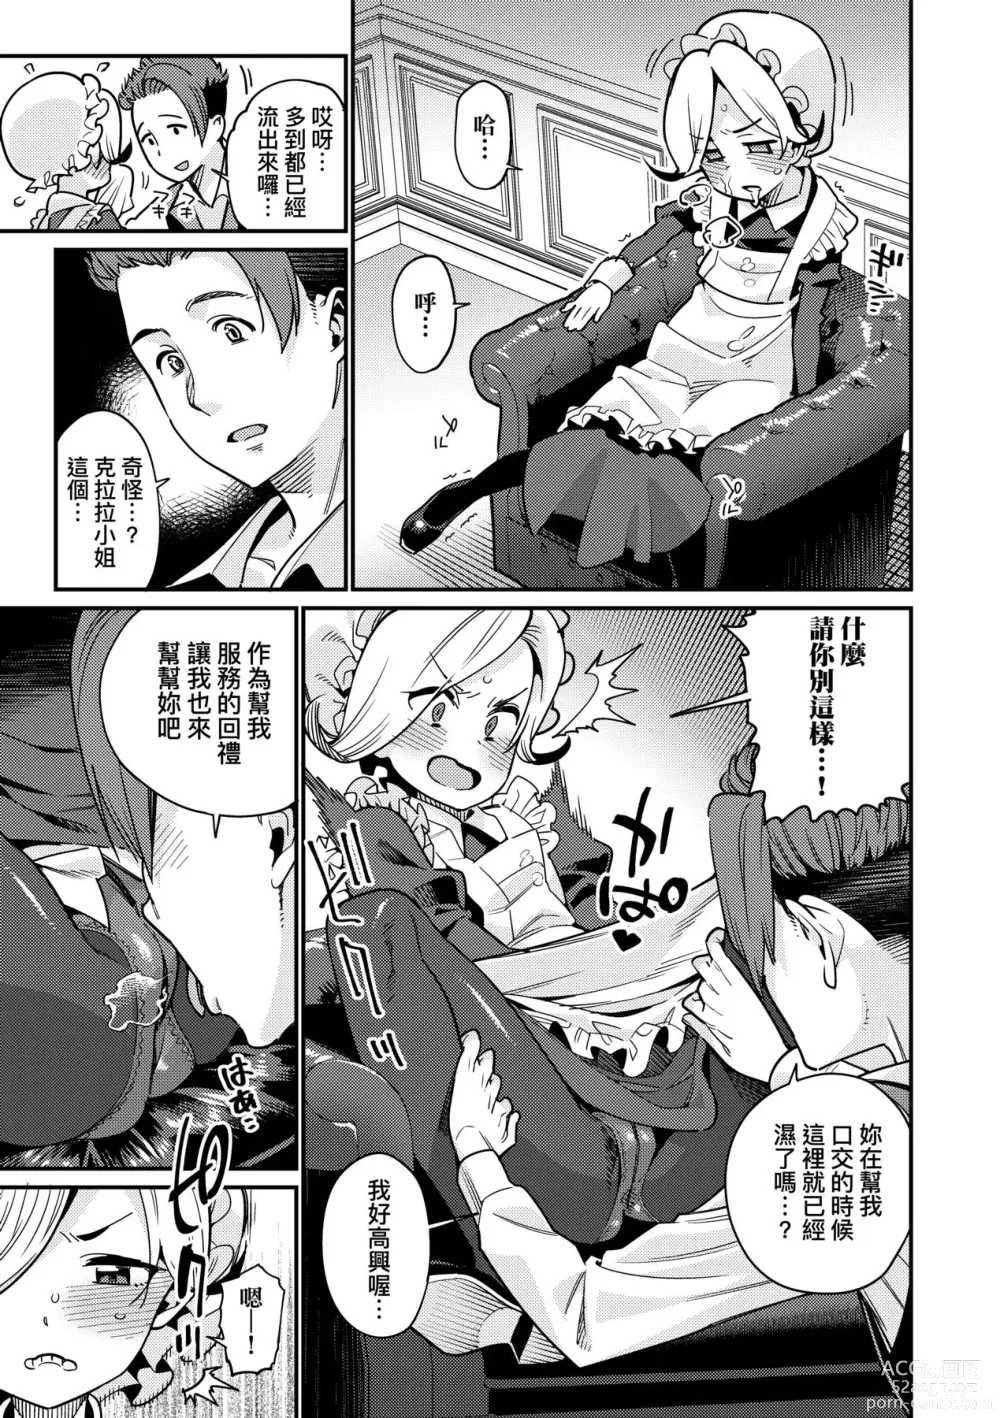 Page 12 of manga Itoshiki Wagaya (decensored)